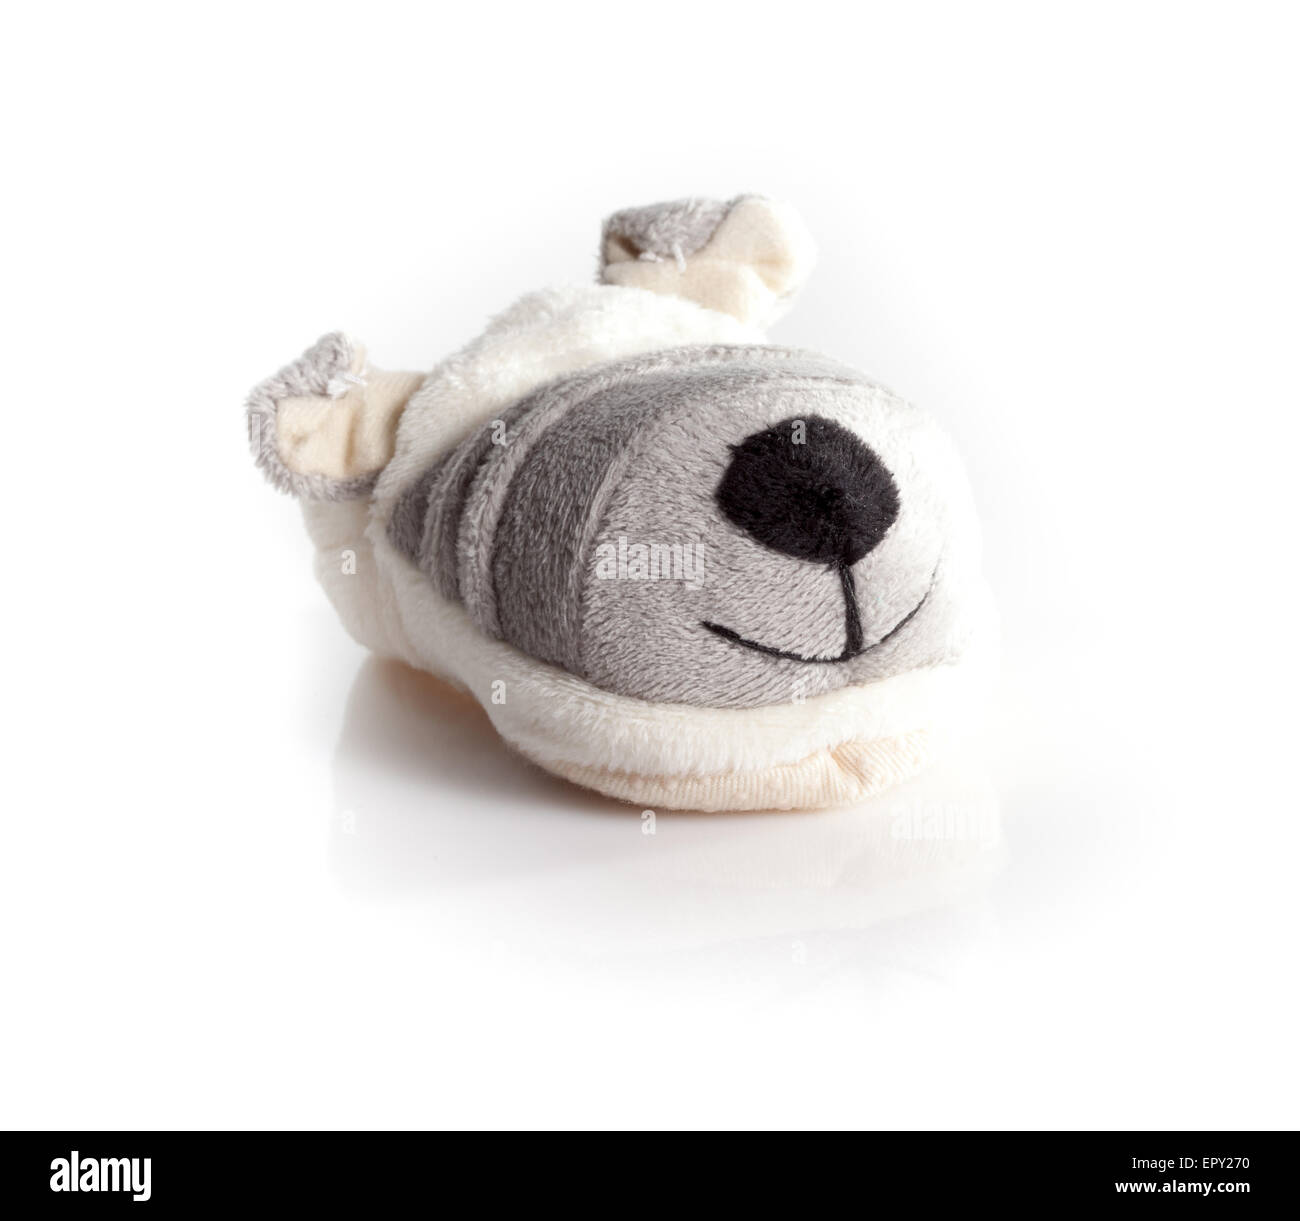 Doggy humoristique bébé isolé sur fond blanc Banque D'Images